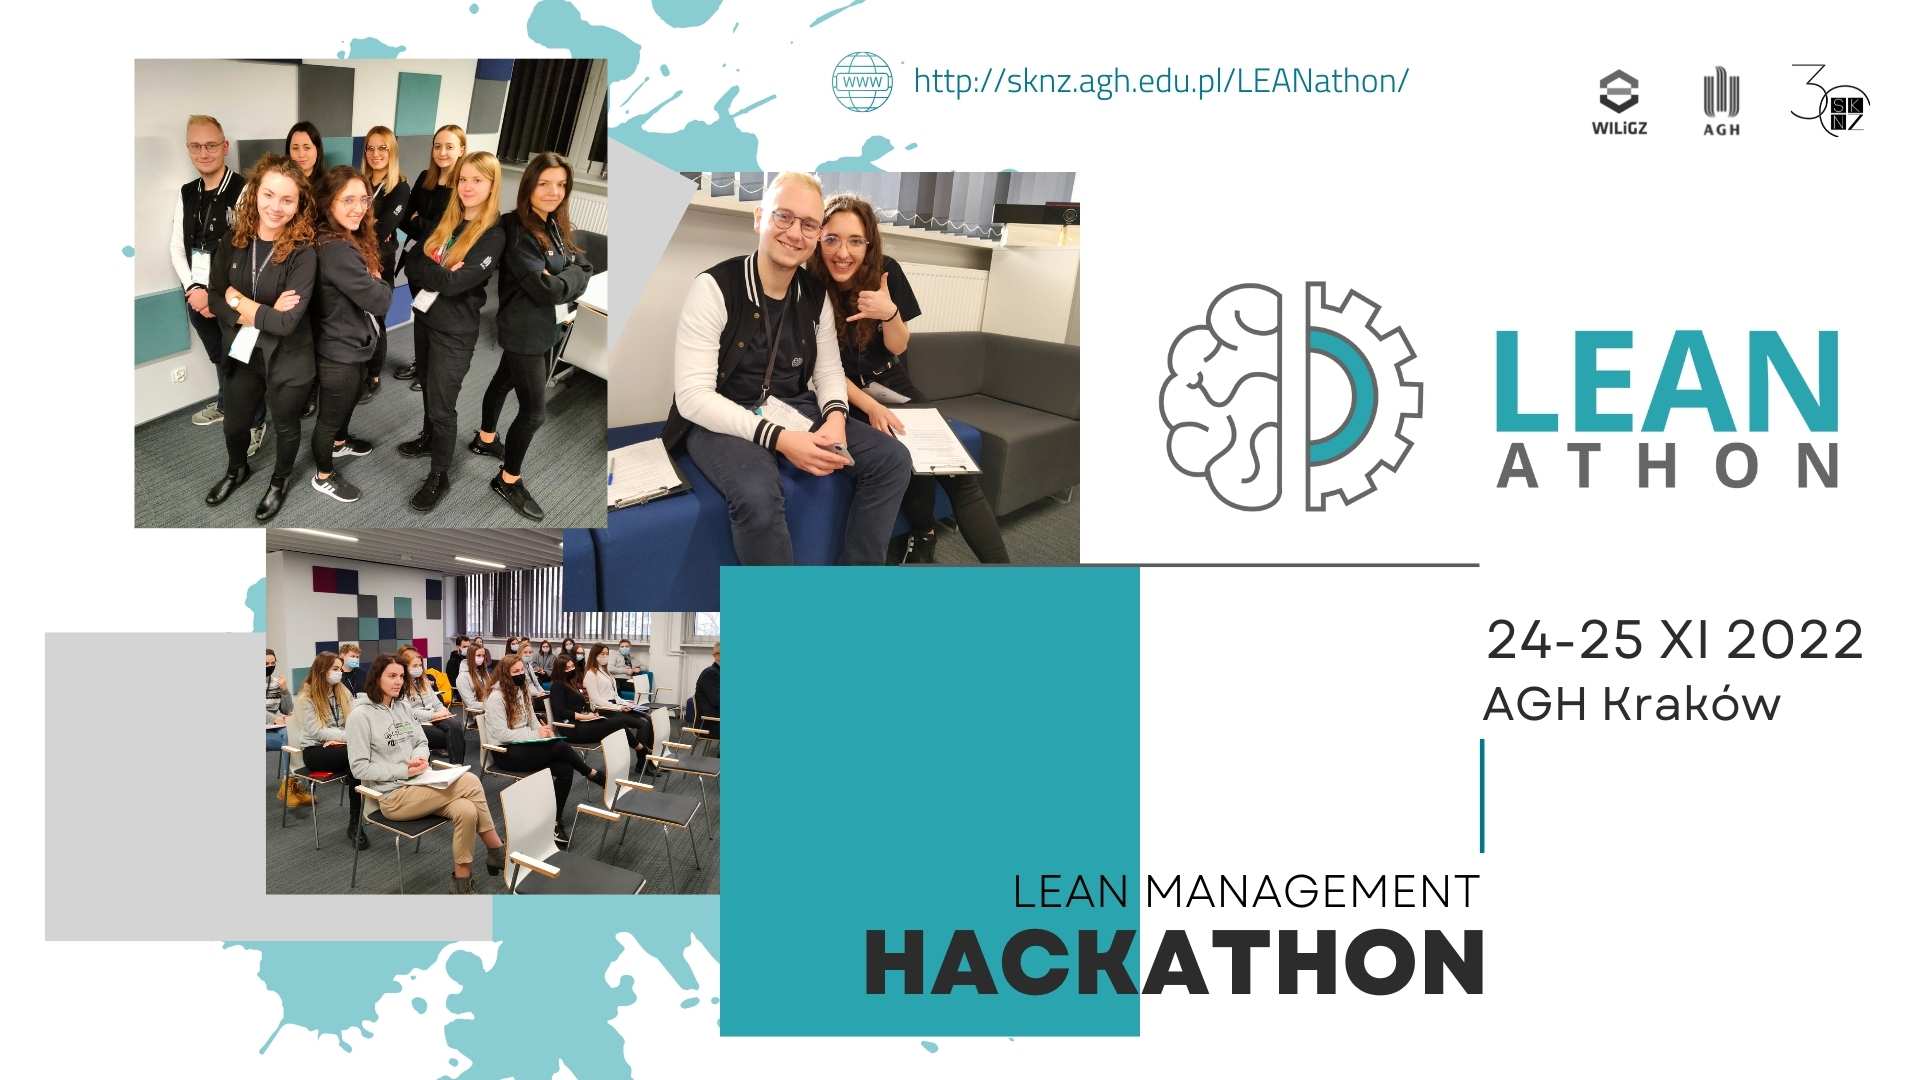 Lean Management Hackathon